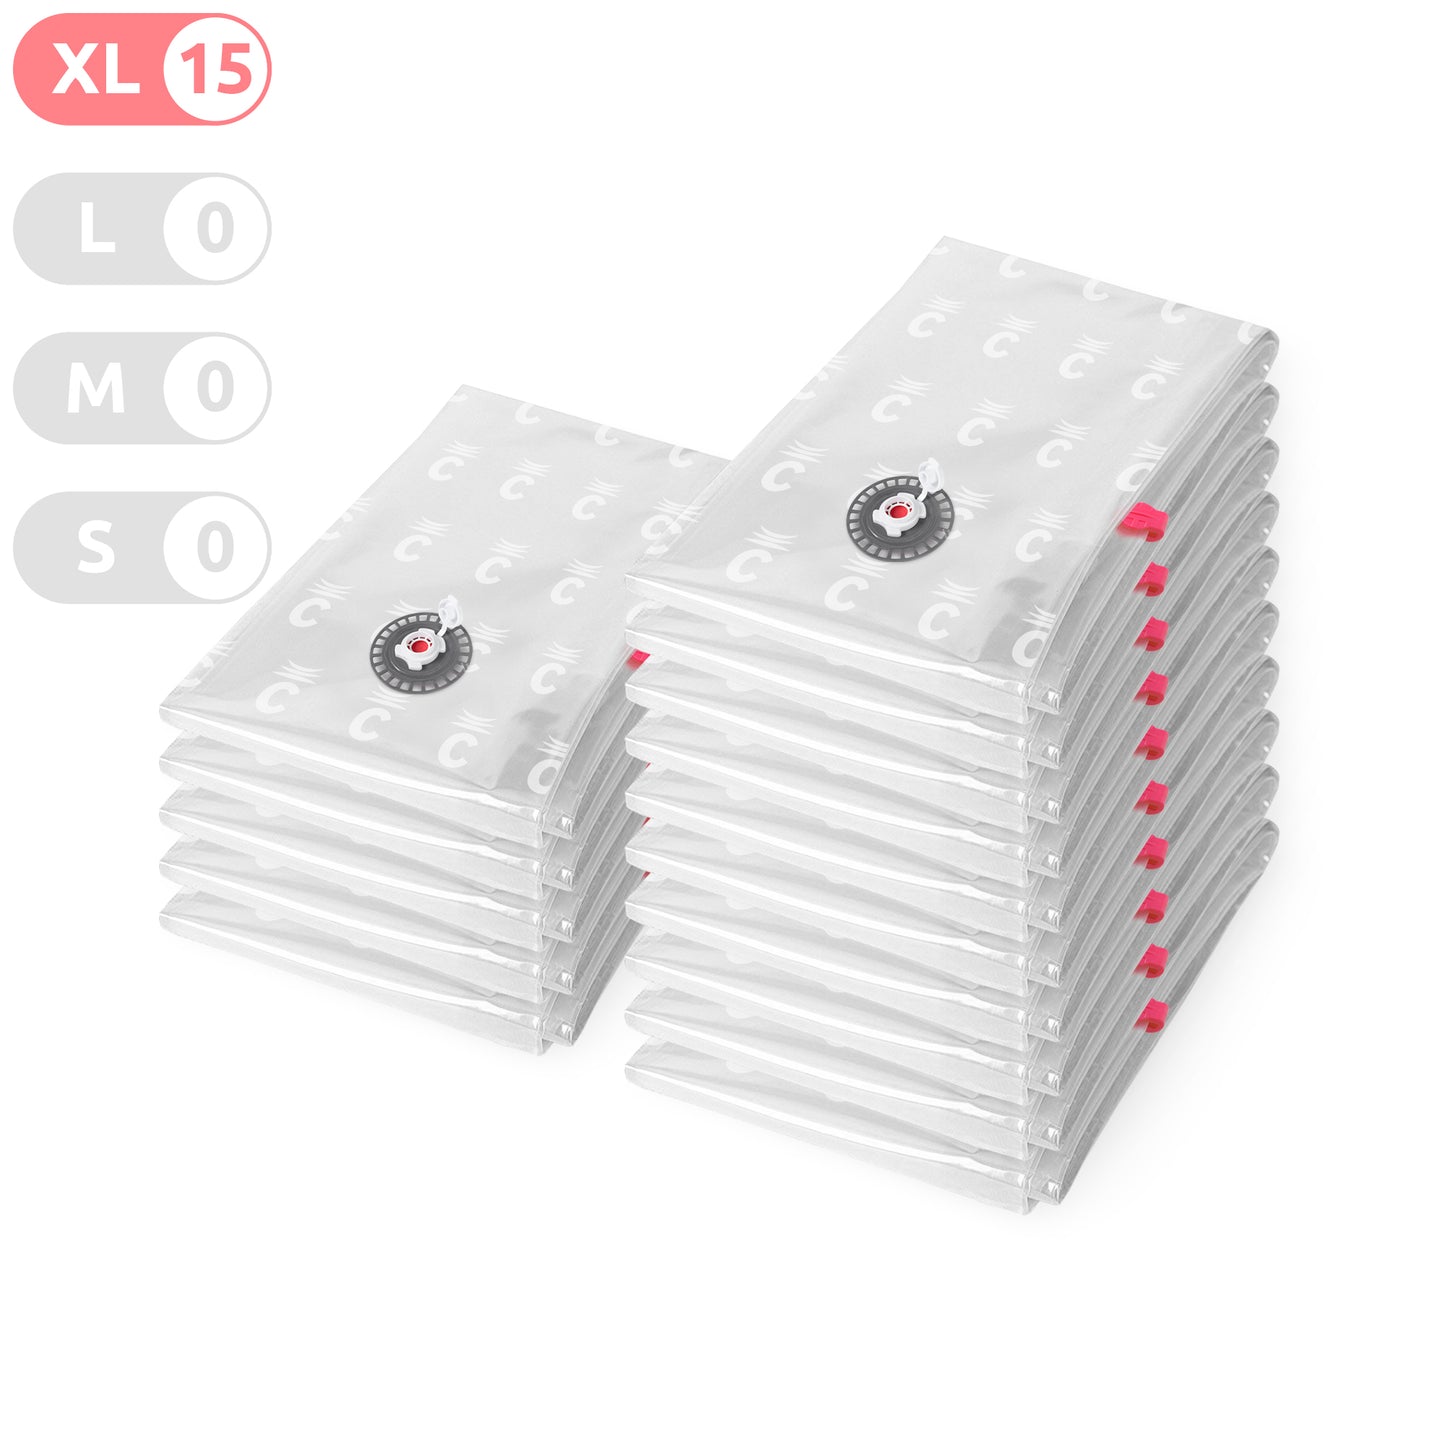 Compactor Lot de 15 sacs de rangement sous vide Aspispace XL transparents